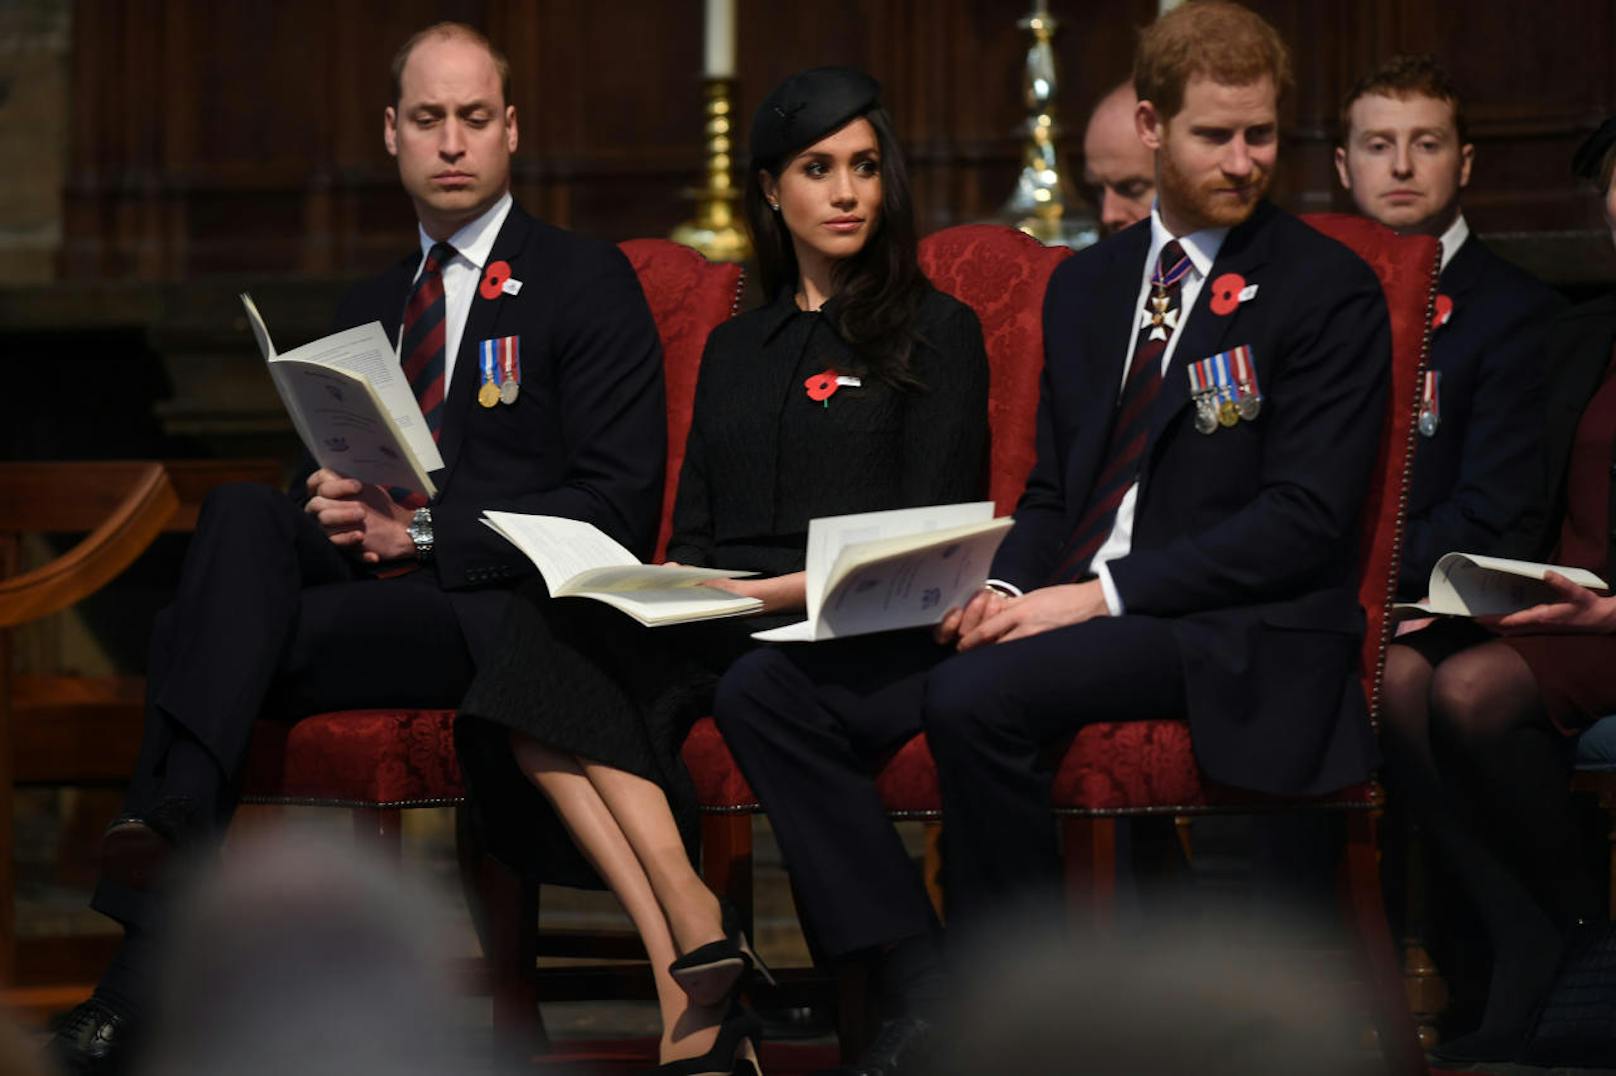 Prinz William, Meghan Markle und Prinz Harry bei einem der ersten gemeinsamen offiziellen Auftritte - beim Gedenken an die Gefallenen im Krieg. Harry und William tragen ihre Orden, alle drei eine rote Mohnblume, die an die Opfer erinnert.